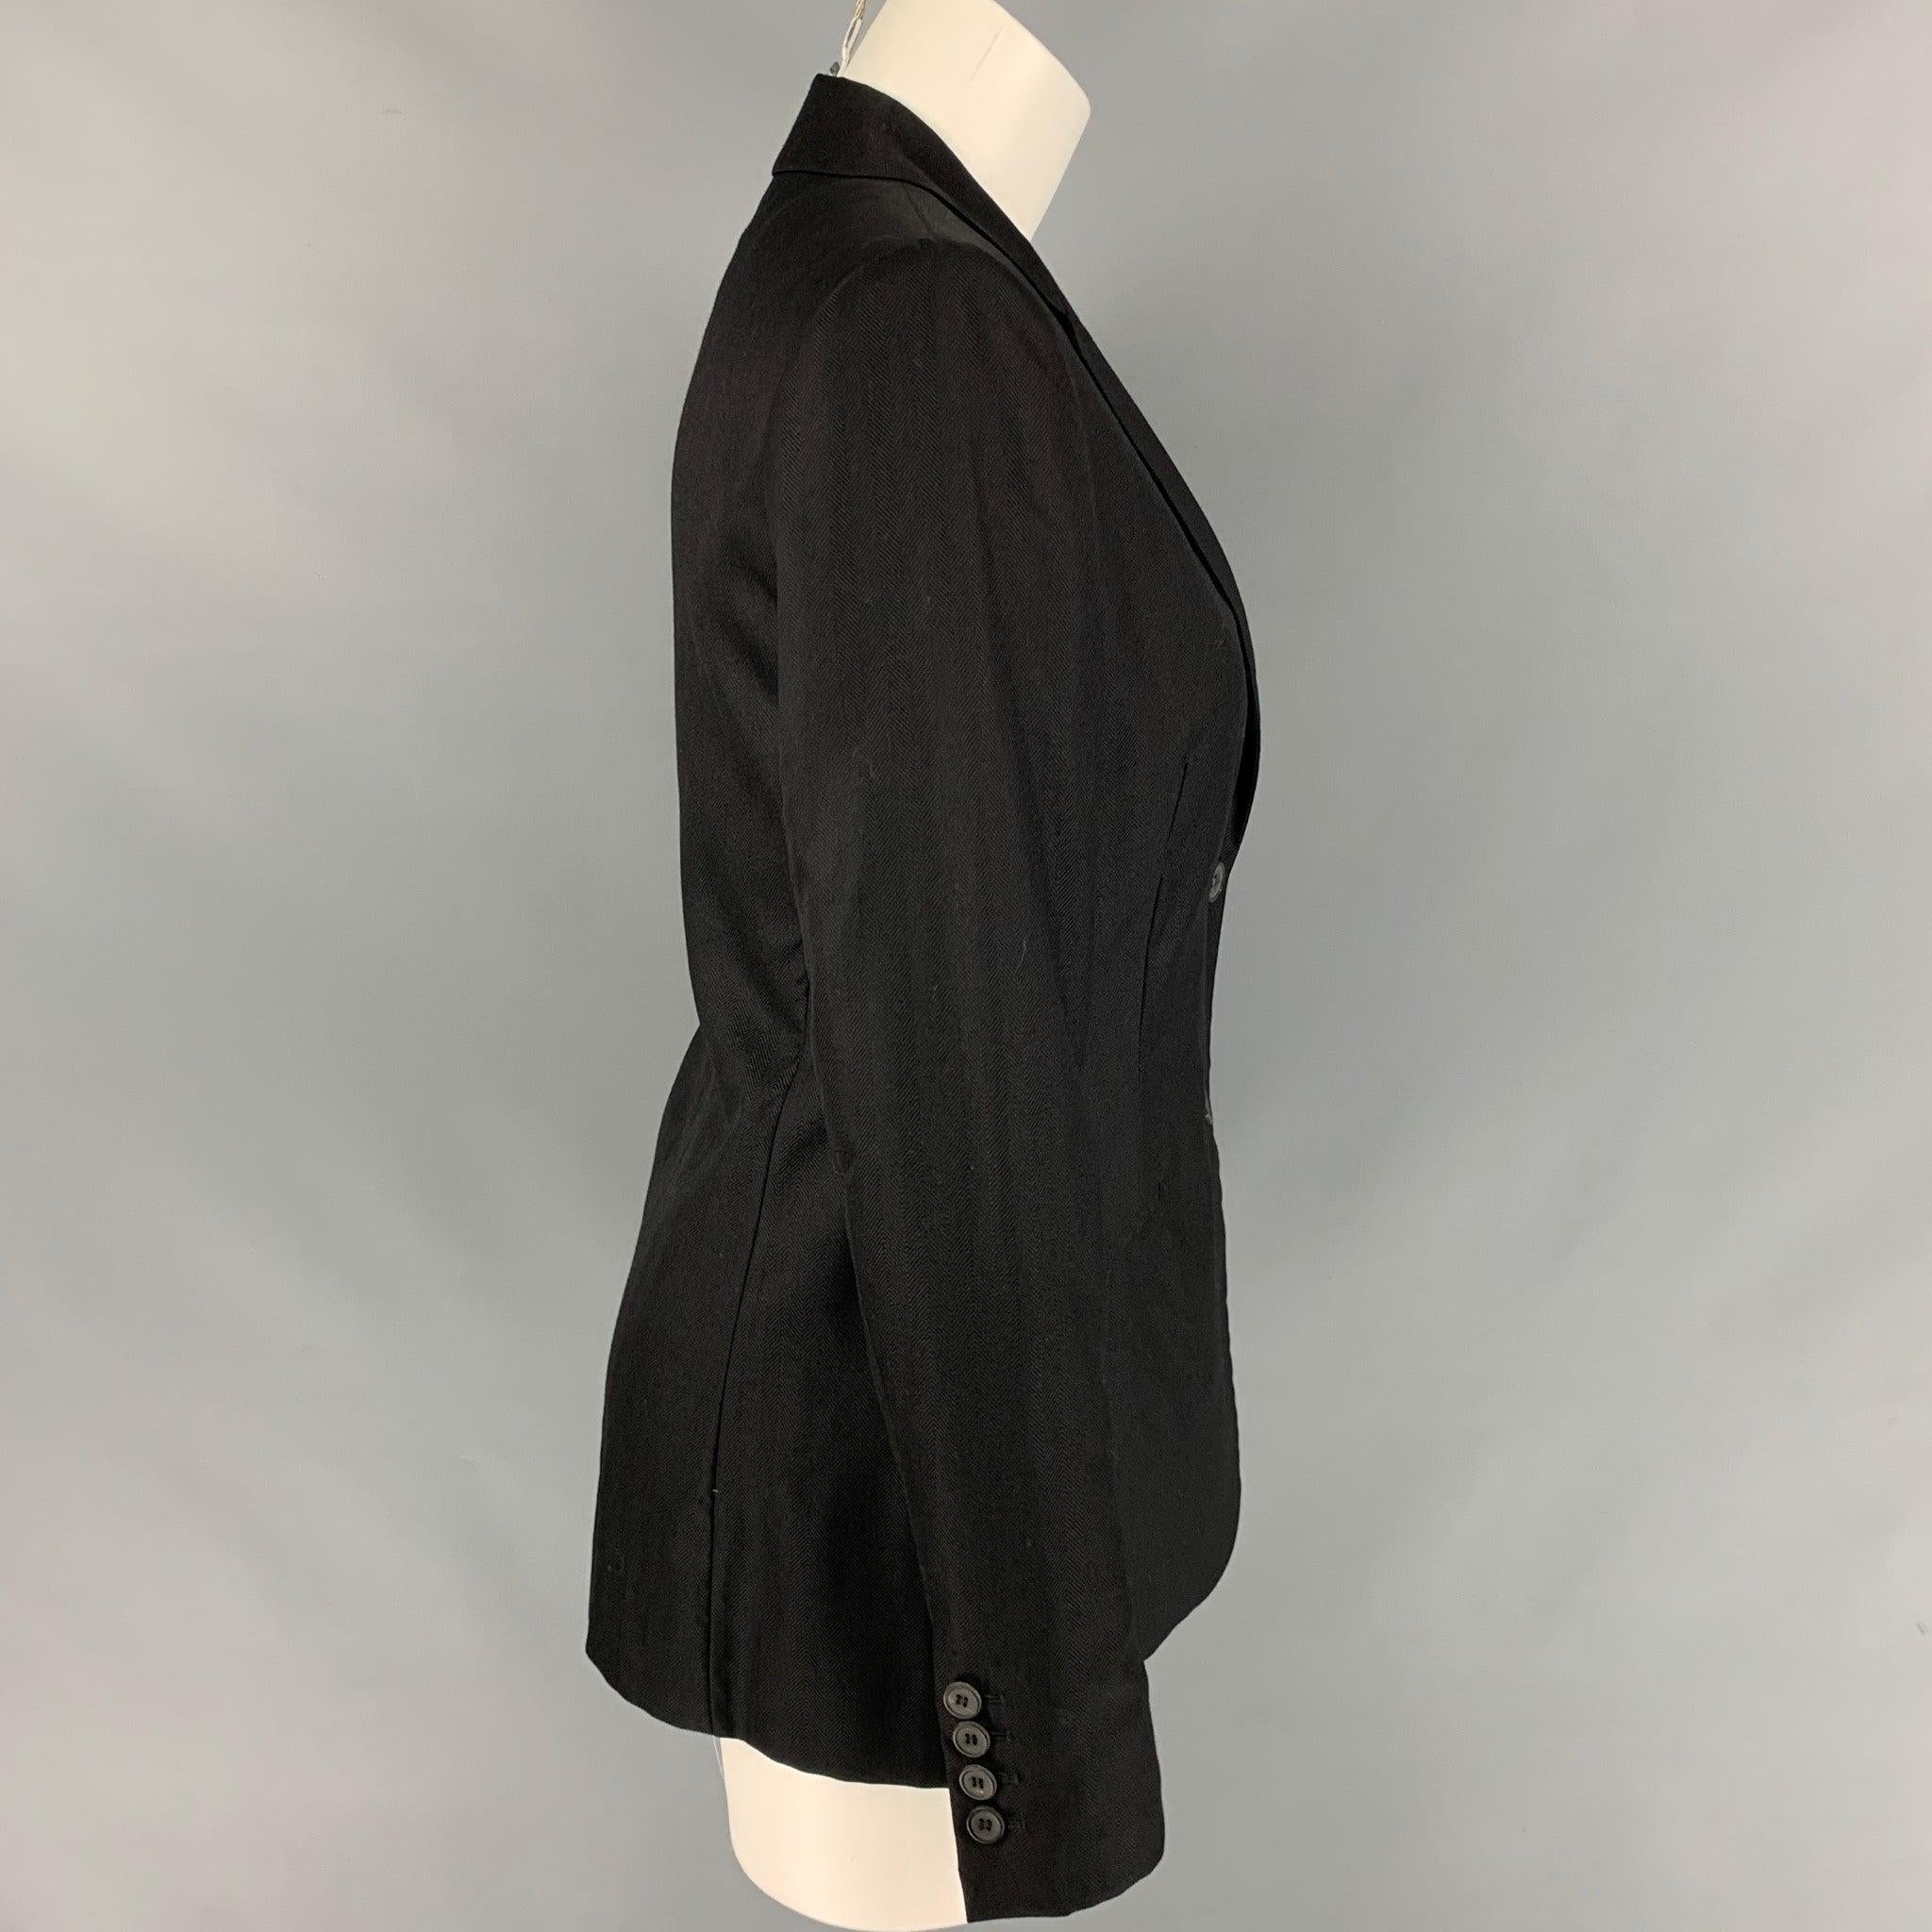 Women's CALVIN KLEIN COLLECTION Size 6 Black Cashmere / Silk Jacke Blazer